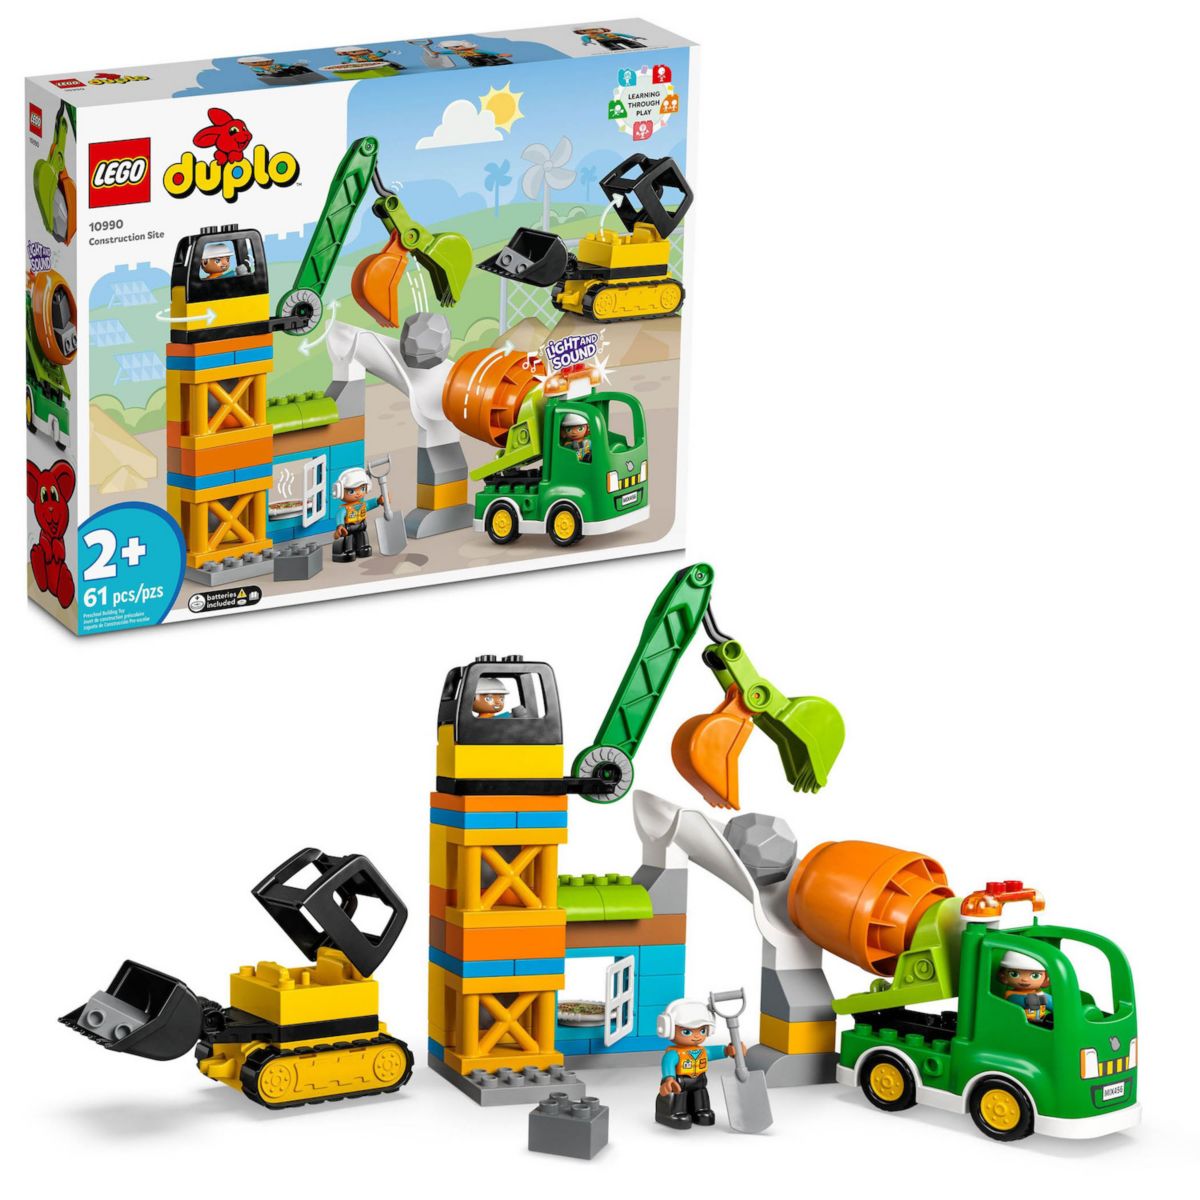 LEGO DUPLO Город: Строительная Площадка 10990 Конструктор Lego